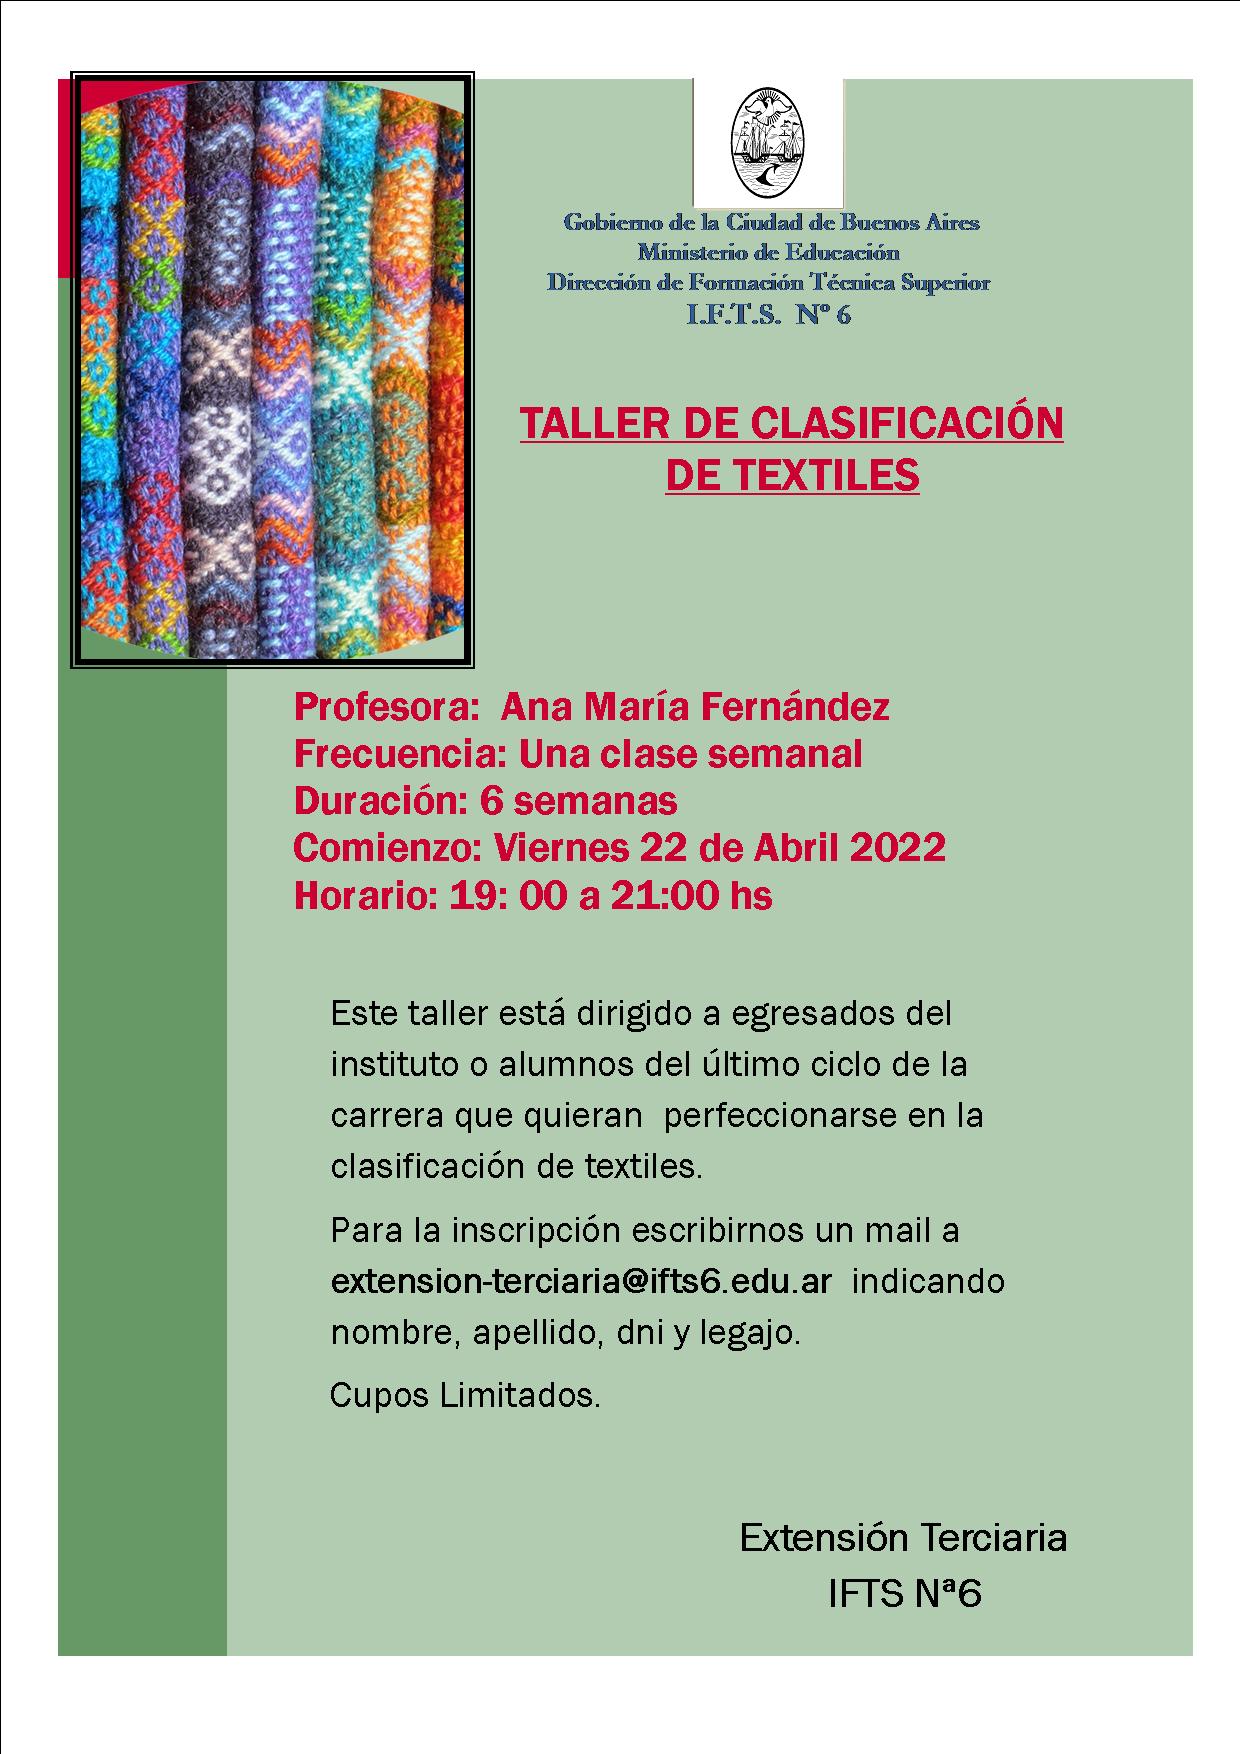 Convocatoria Taller Clasificación de textiles 1er Cuat 2022